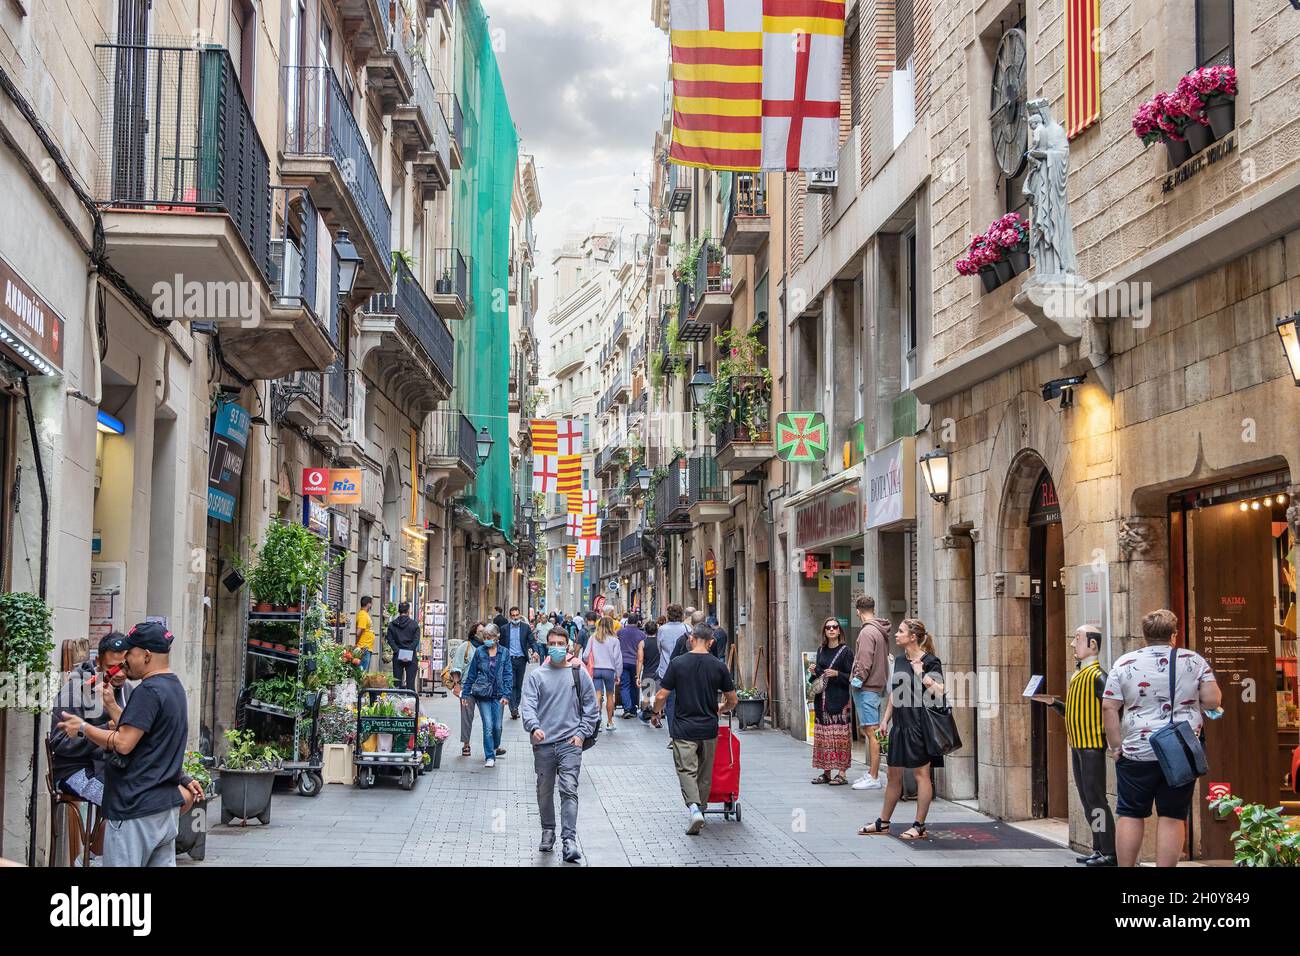 Barcelone, Espagne - 27 septembre 2021 : rue de Barcelone ornée de drapeaux de Catalogne Banque D'Images